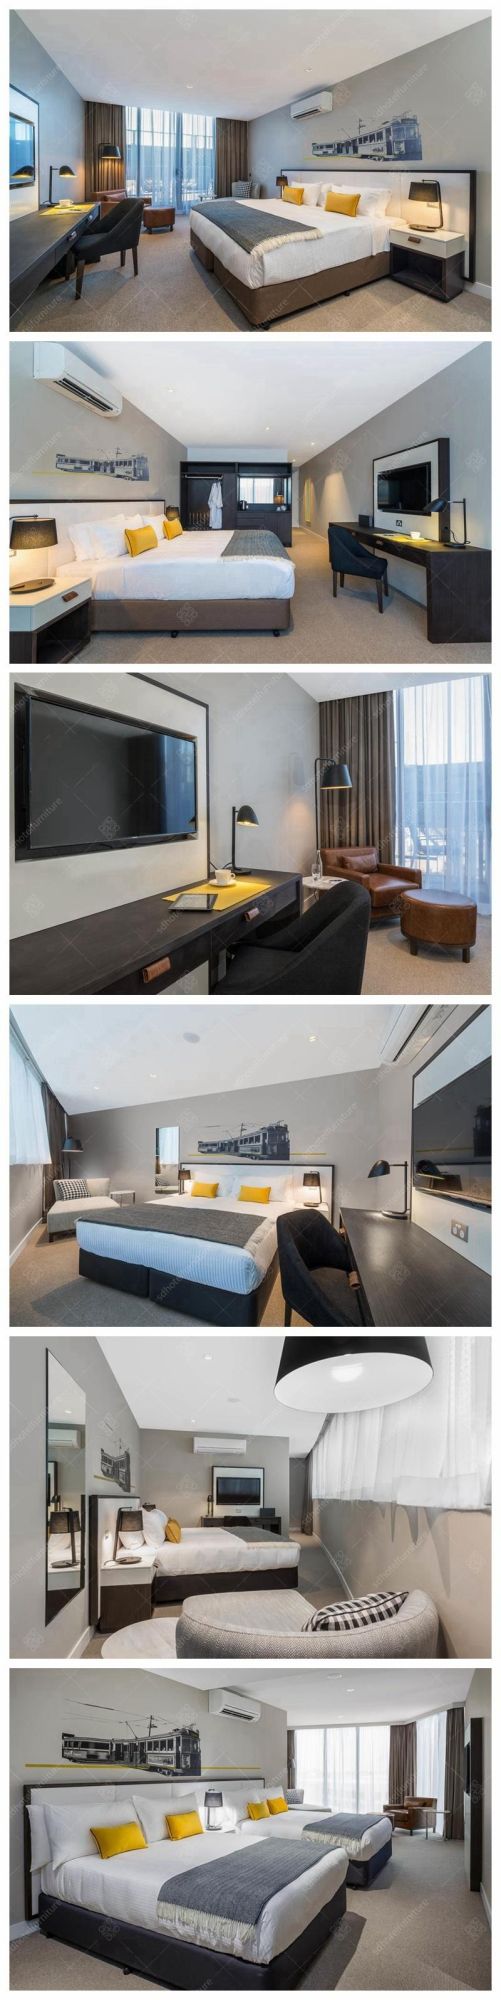 Modern Wooden Fashion 5 Stars Hotel Bedroom Furniture Sets